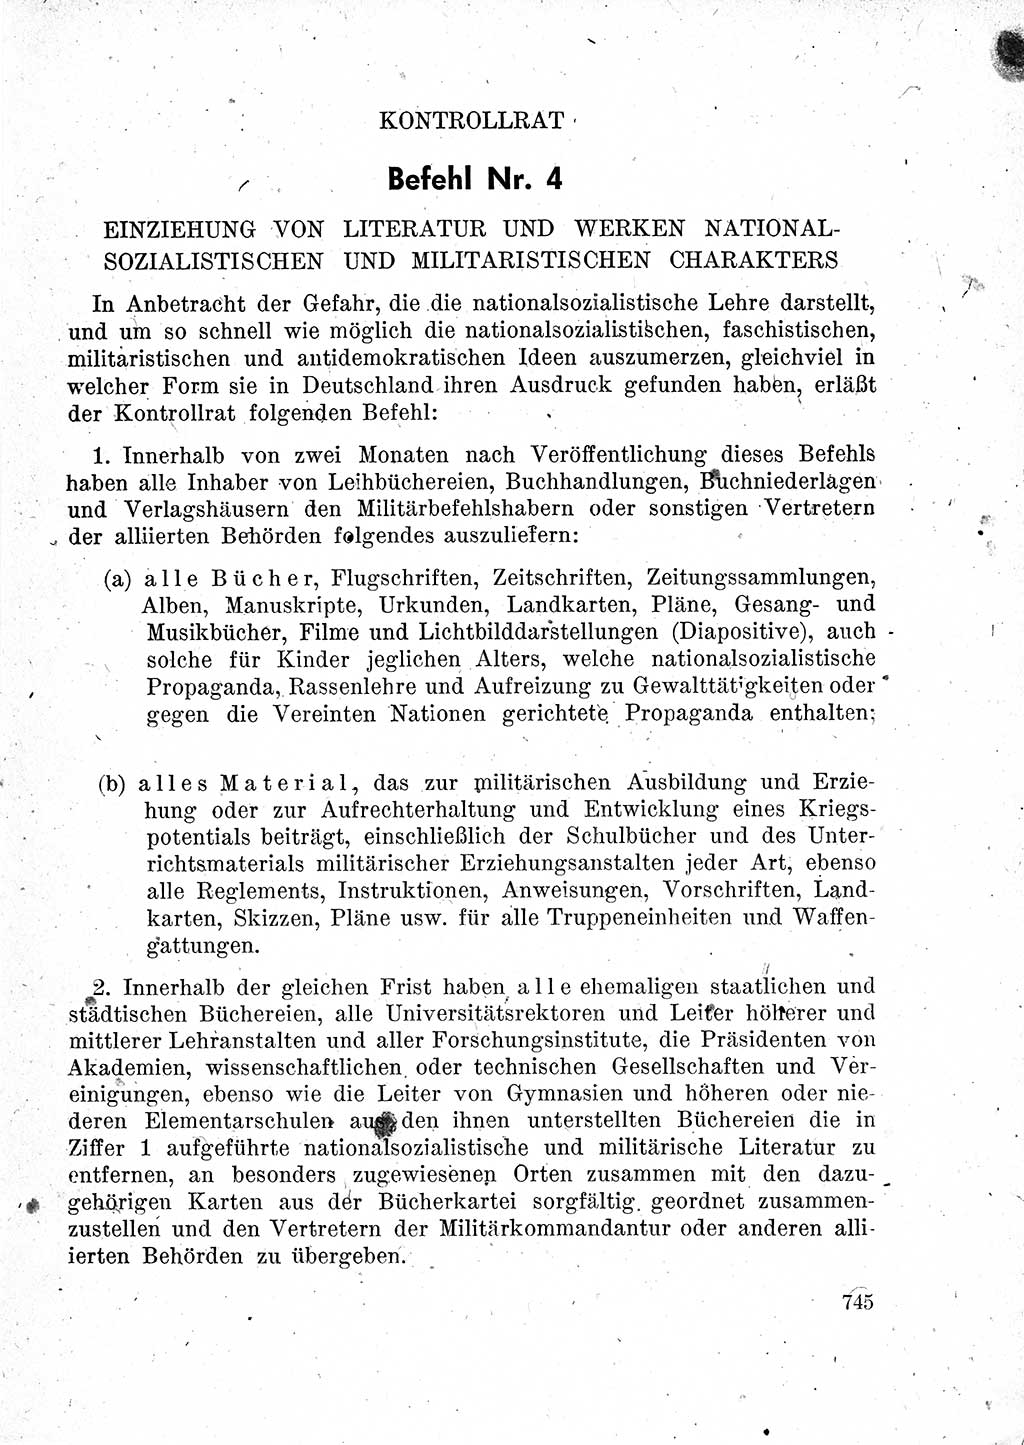 Das Recht der Besatzungsmacht (Deutschland), Proklamationen, Deklerationen, Verordnungen, Gesetze und Bekanntmachungen 1947, Seite 745 (R. Bes. Dtl. 1947, S. 745)